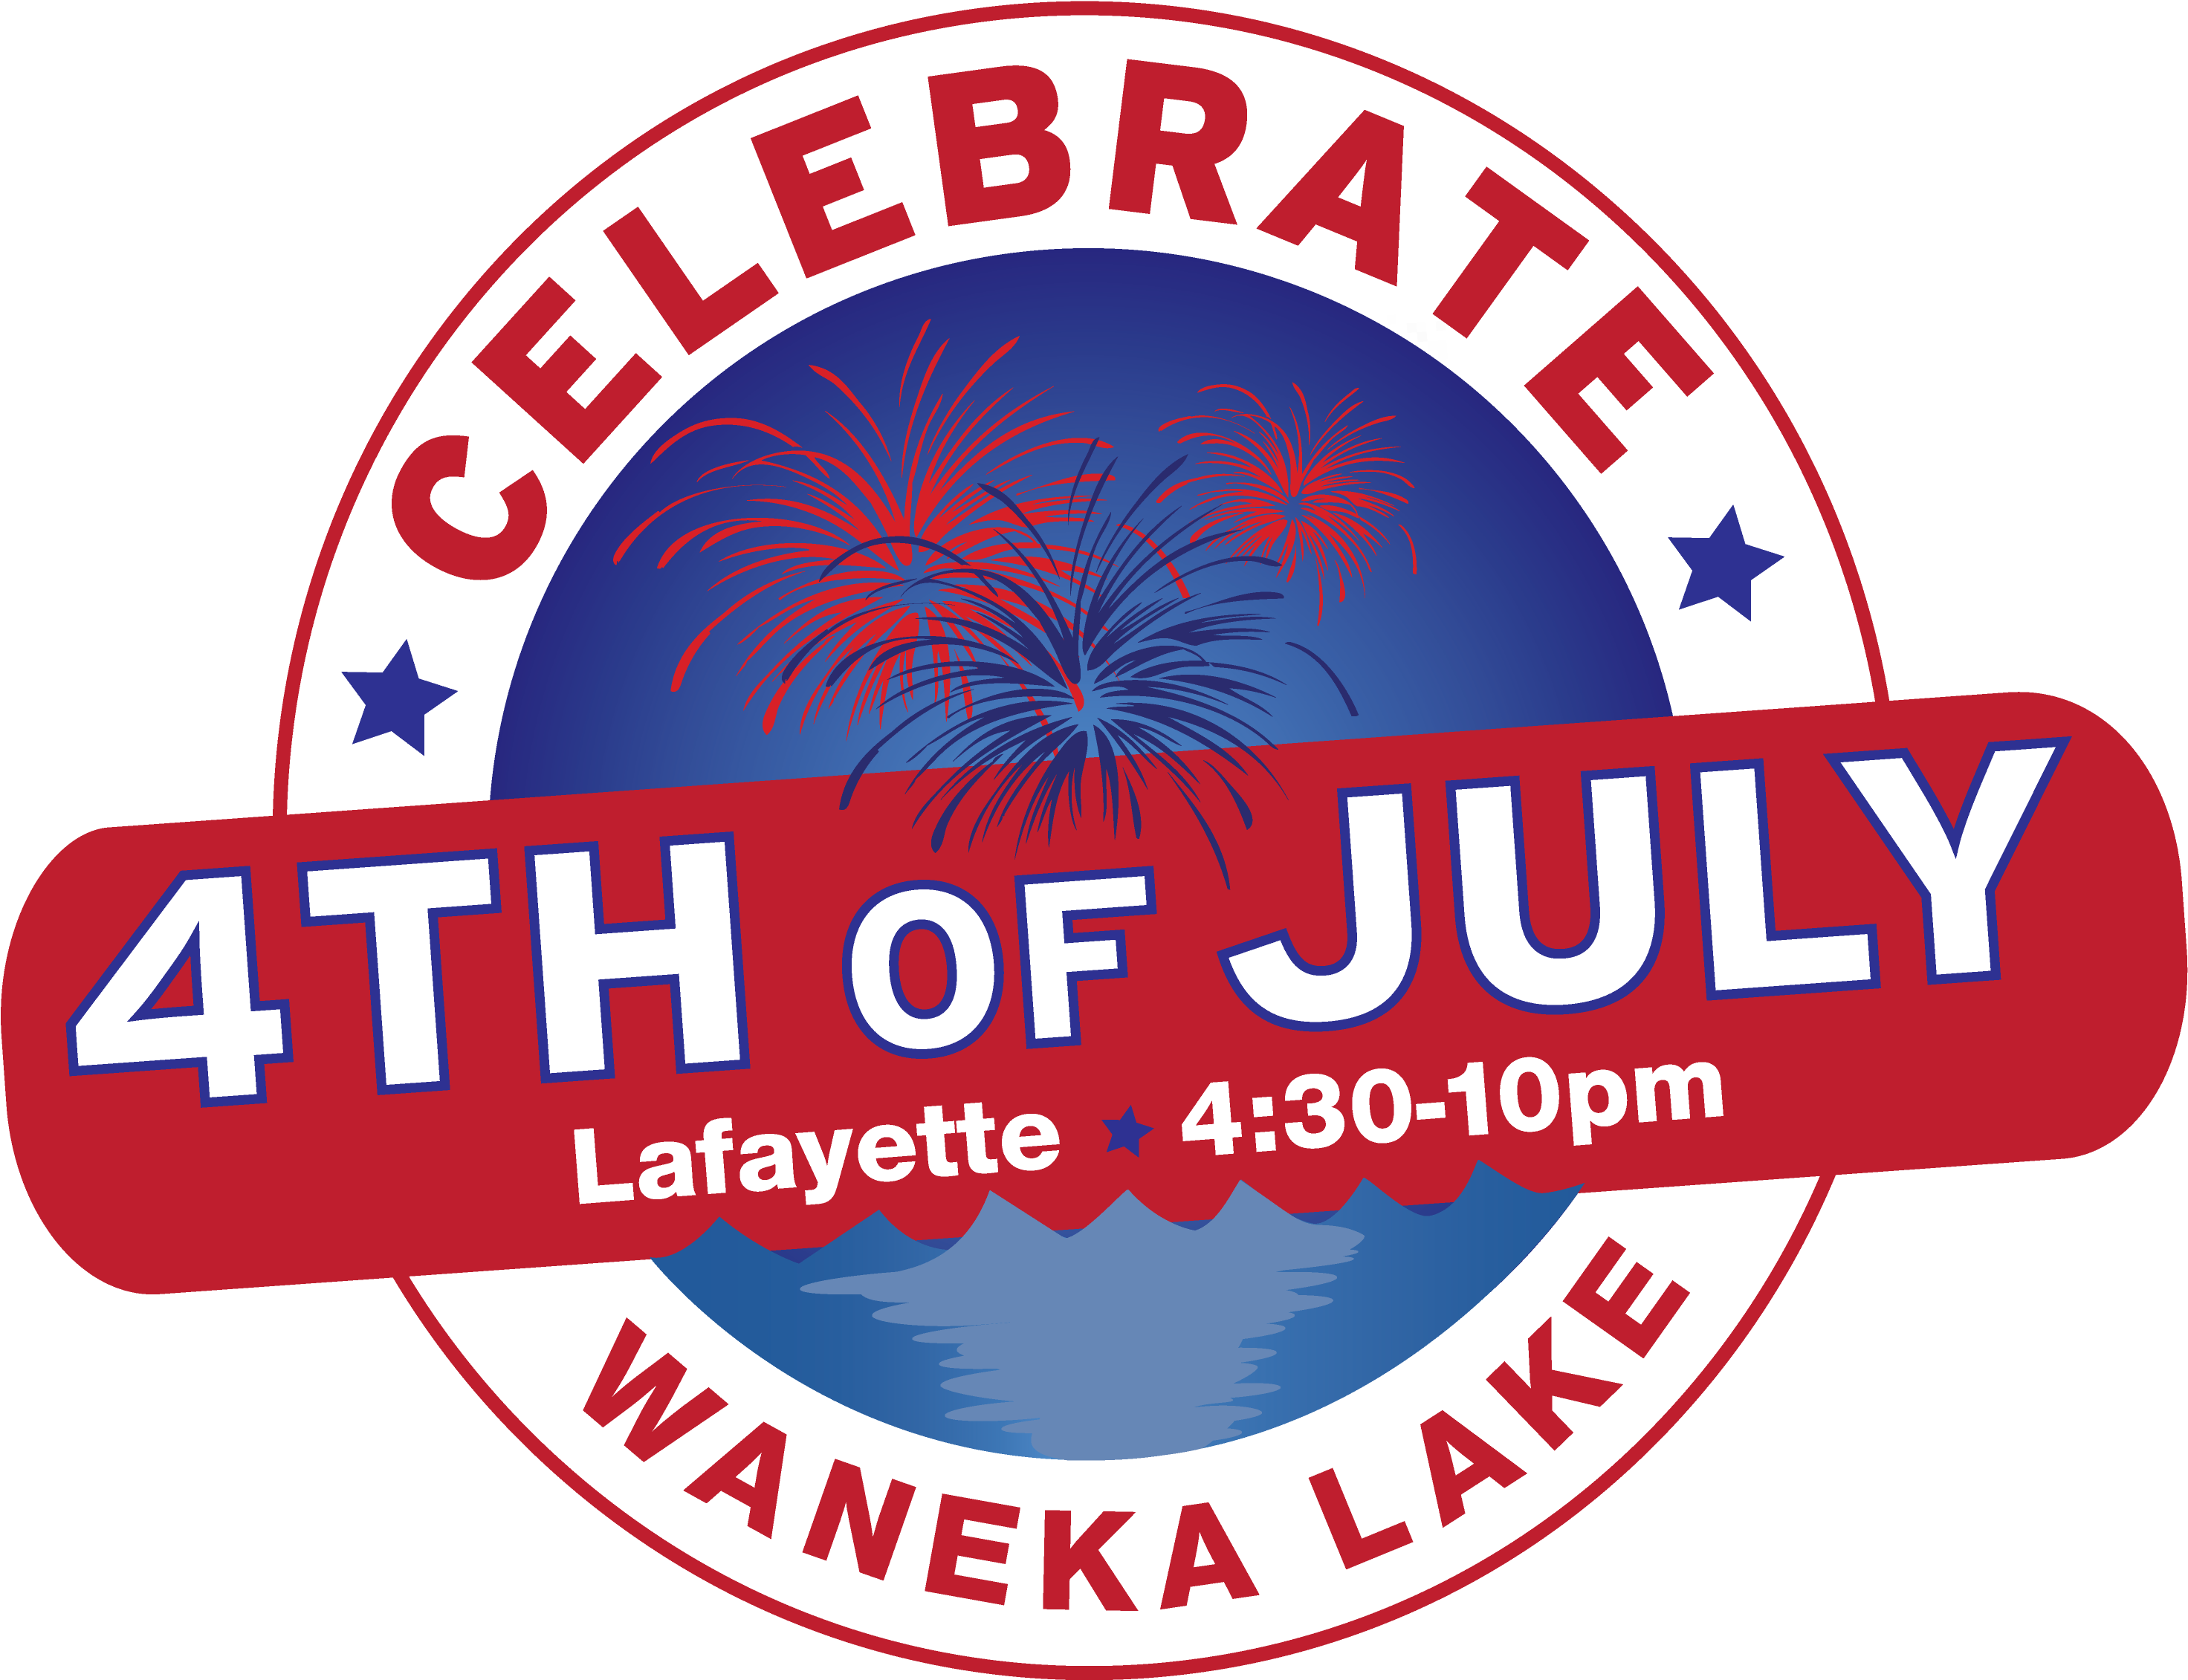 4thof July Celebration Waneka Lake Lafayette PNG image